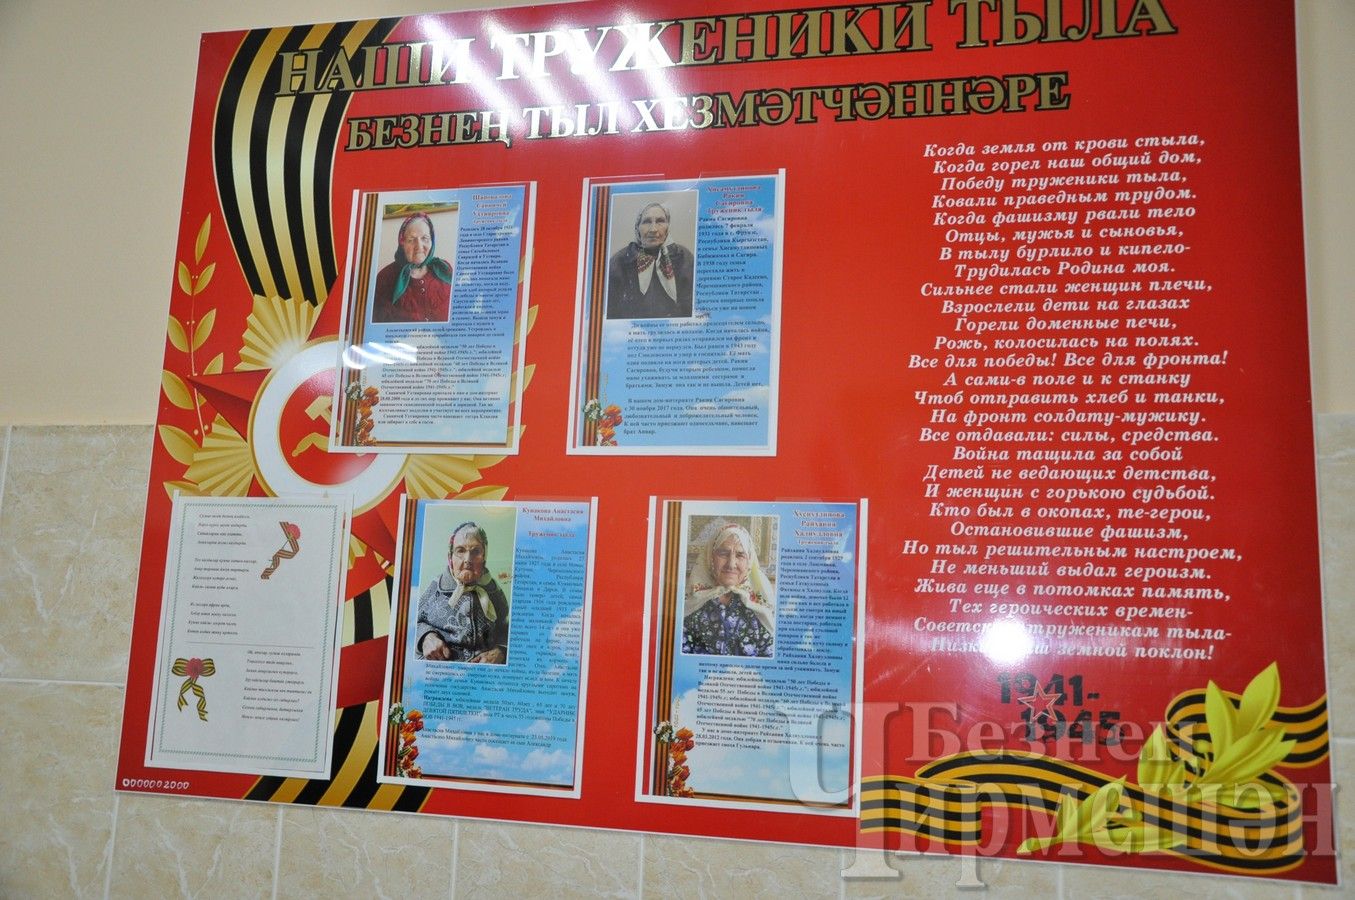 Жителей Черемшанского дома-интерната наградили медалью